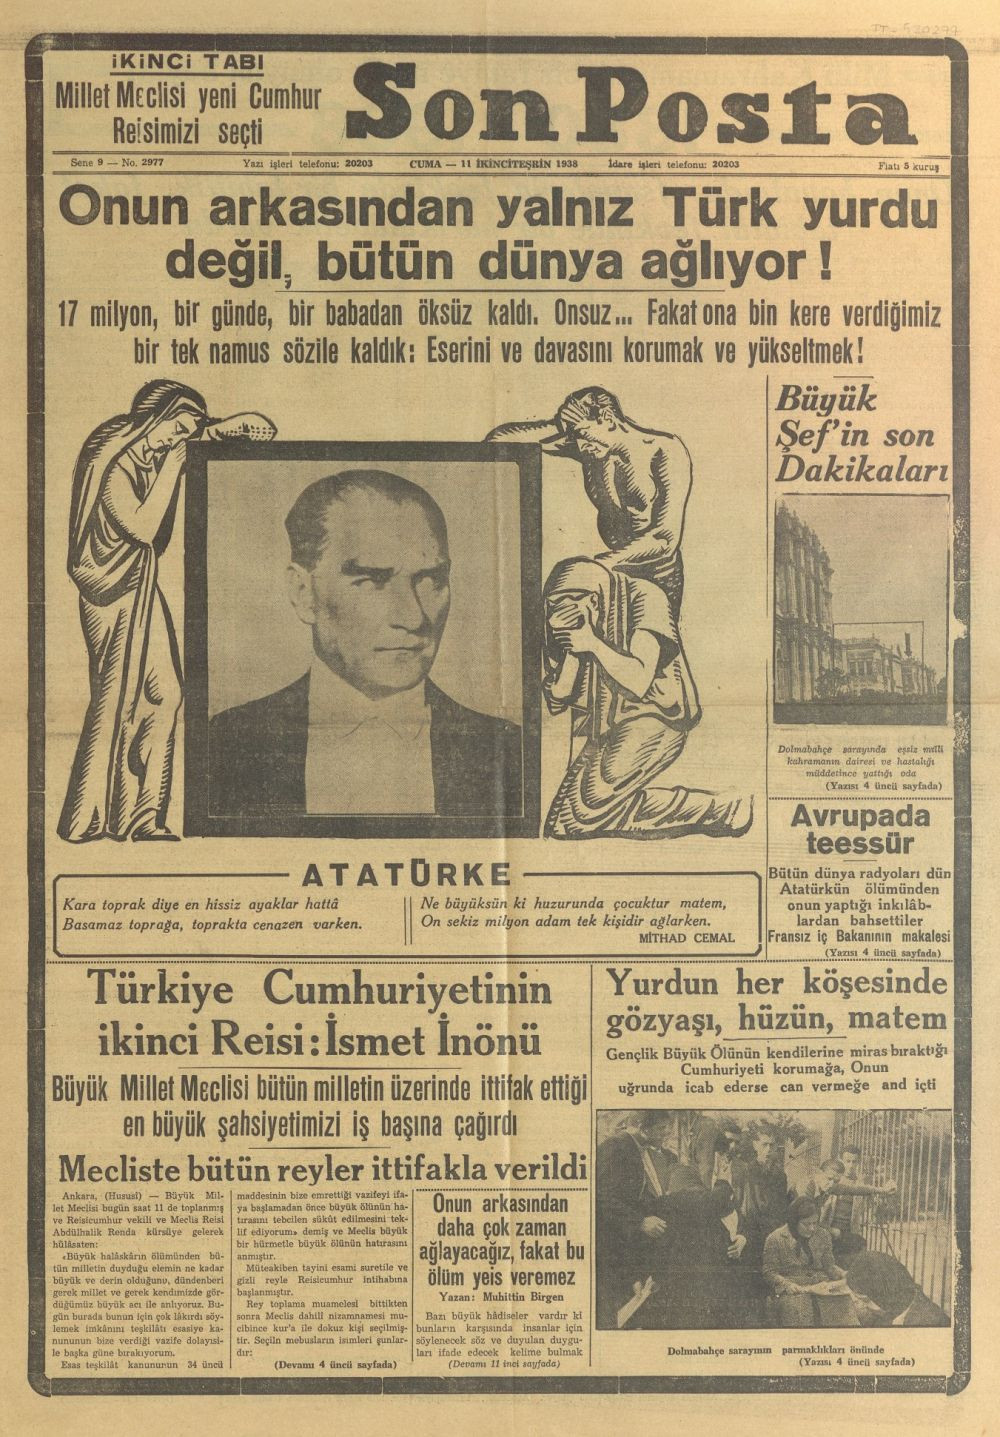 Atatürk'ün vefat haberi 82 yıl önce böyle verildi! 10 Kasım 1938 Gazete Manşetleri! - Sayfa 4